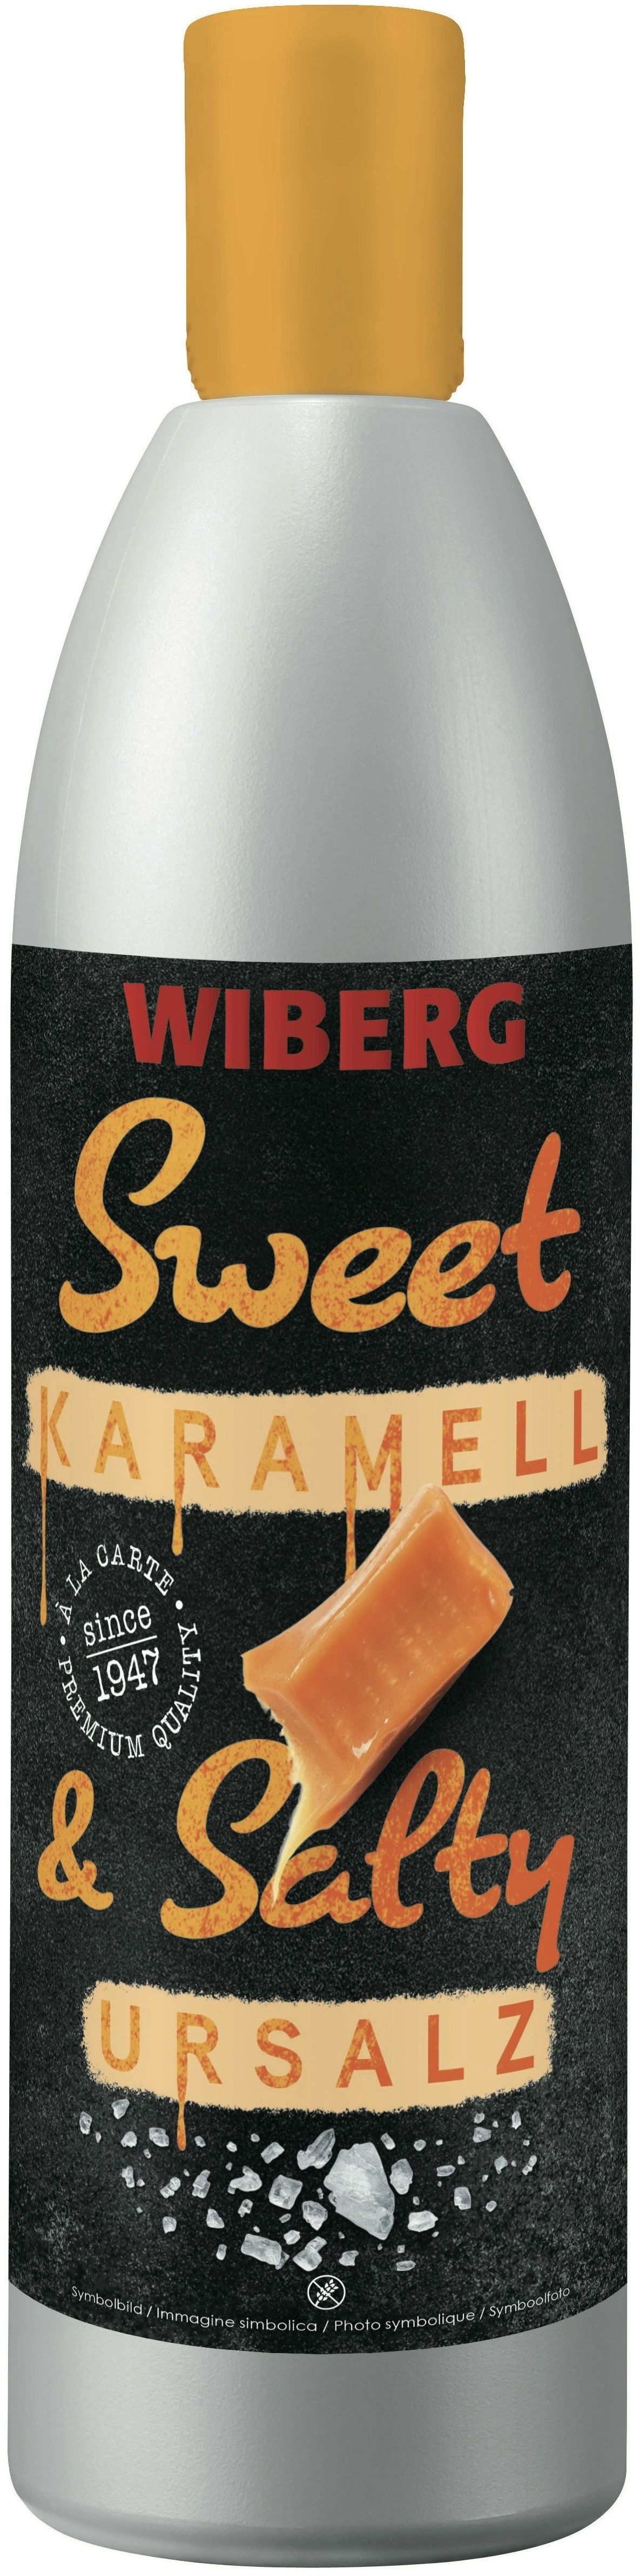 WIBERG Sweet & Salty - Karamell & Ursalz Süße Sauce mit Karamell und Salz (590 g)